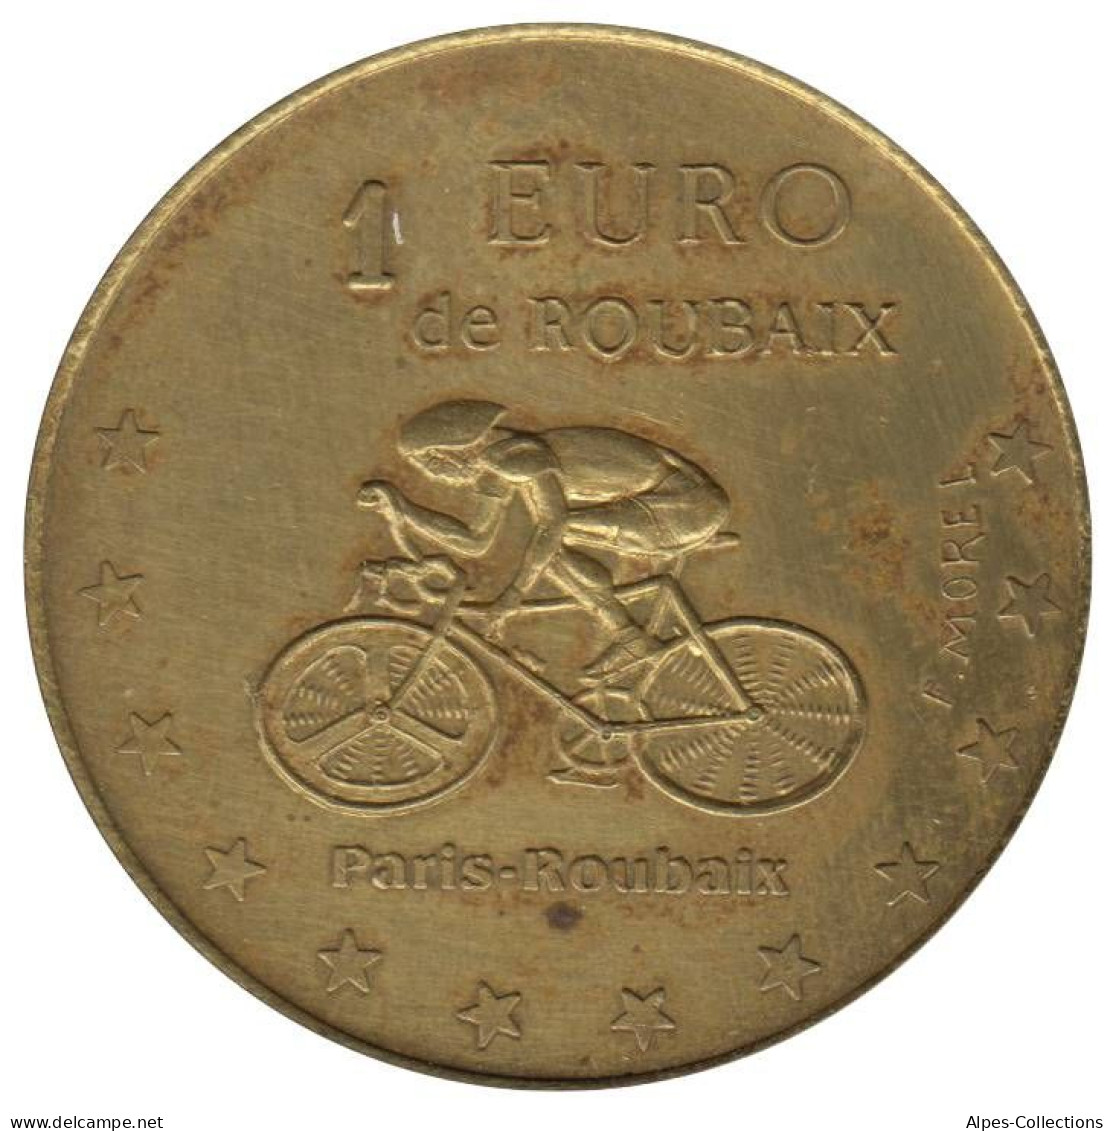 ROUBAIX - EU0010.1 - 1 EURO DES VILLES - Réf: NR - 1998 - Euro Delle Città